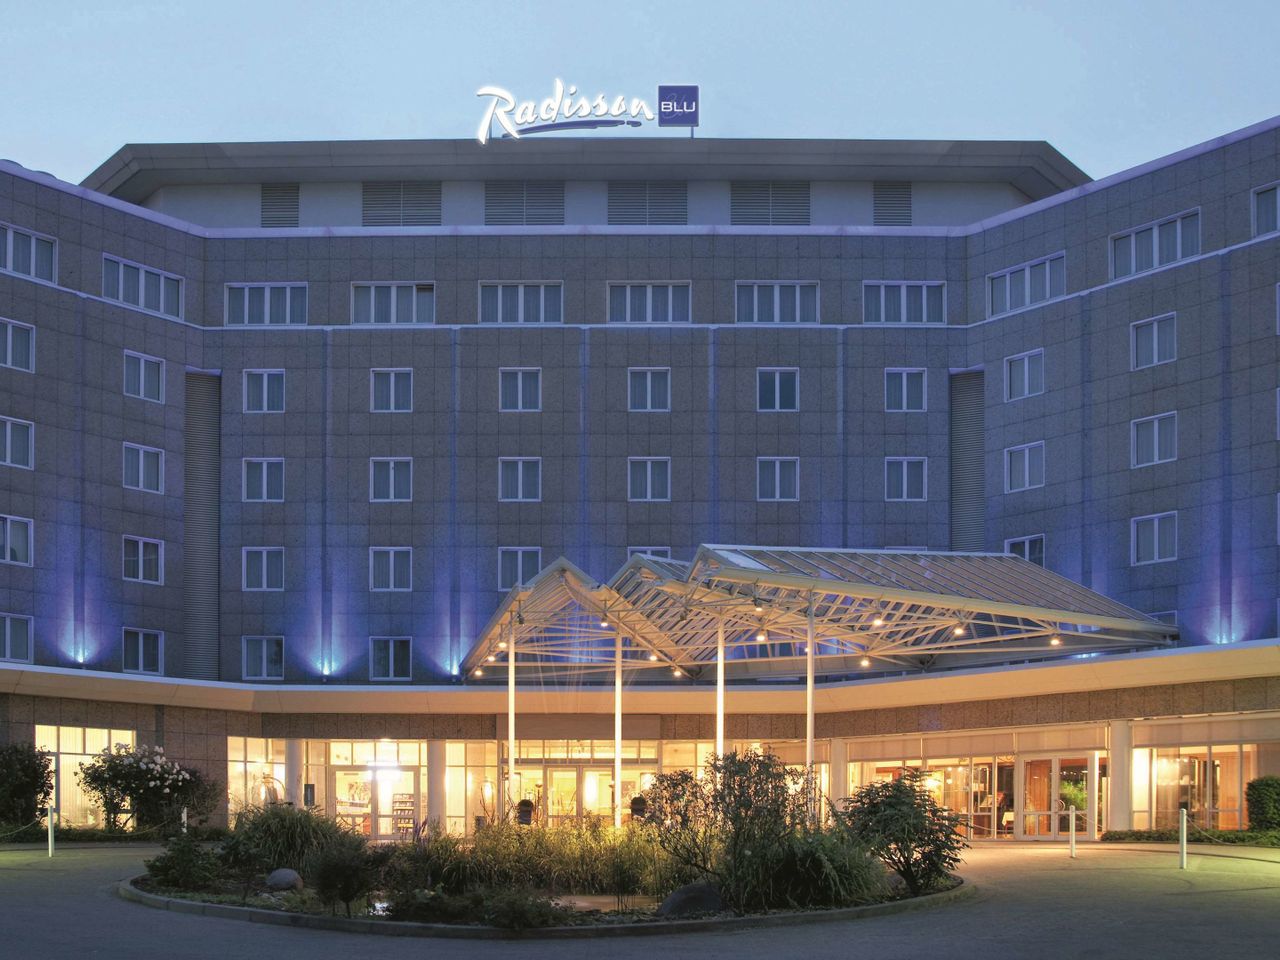 6 Tage im Radisson Blu Hotel, Dortmund 